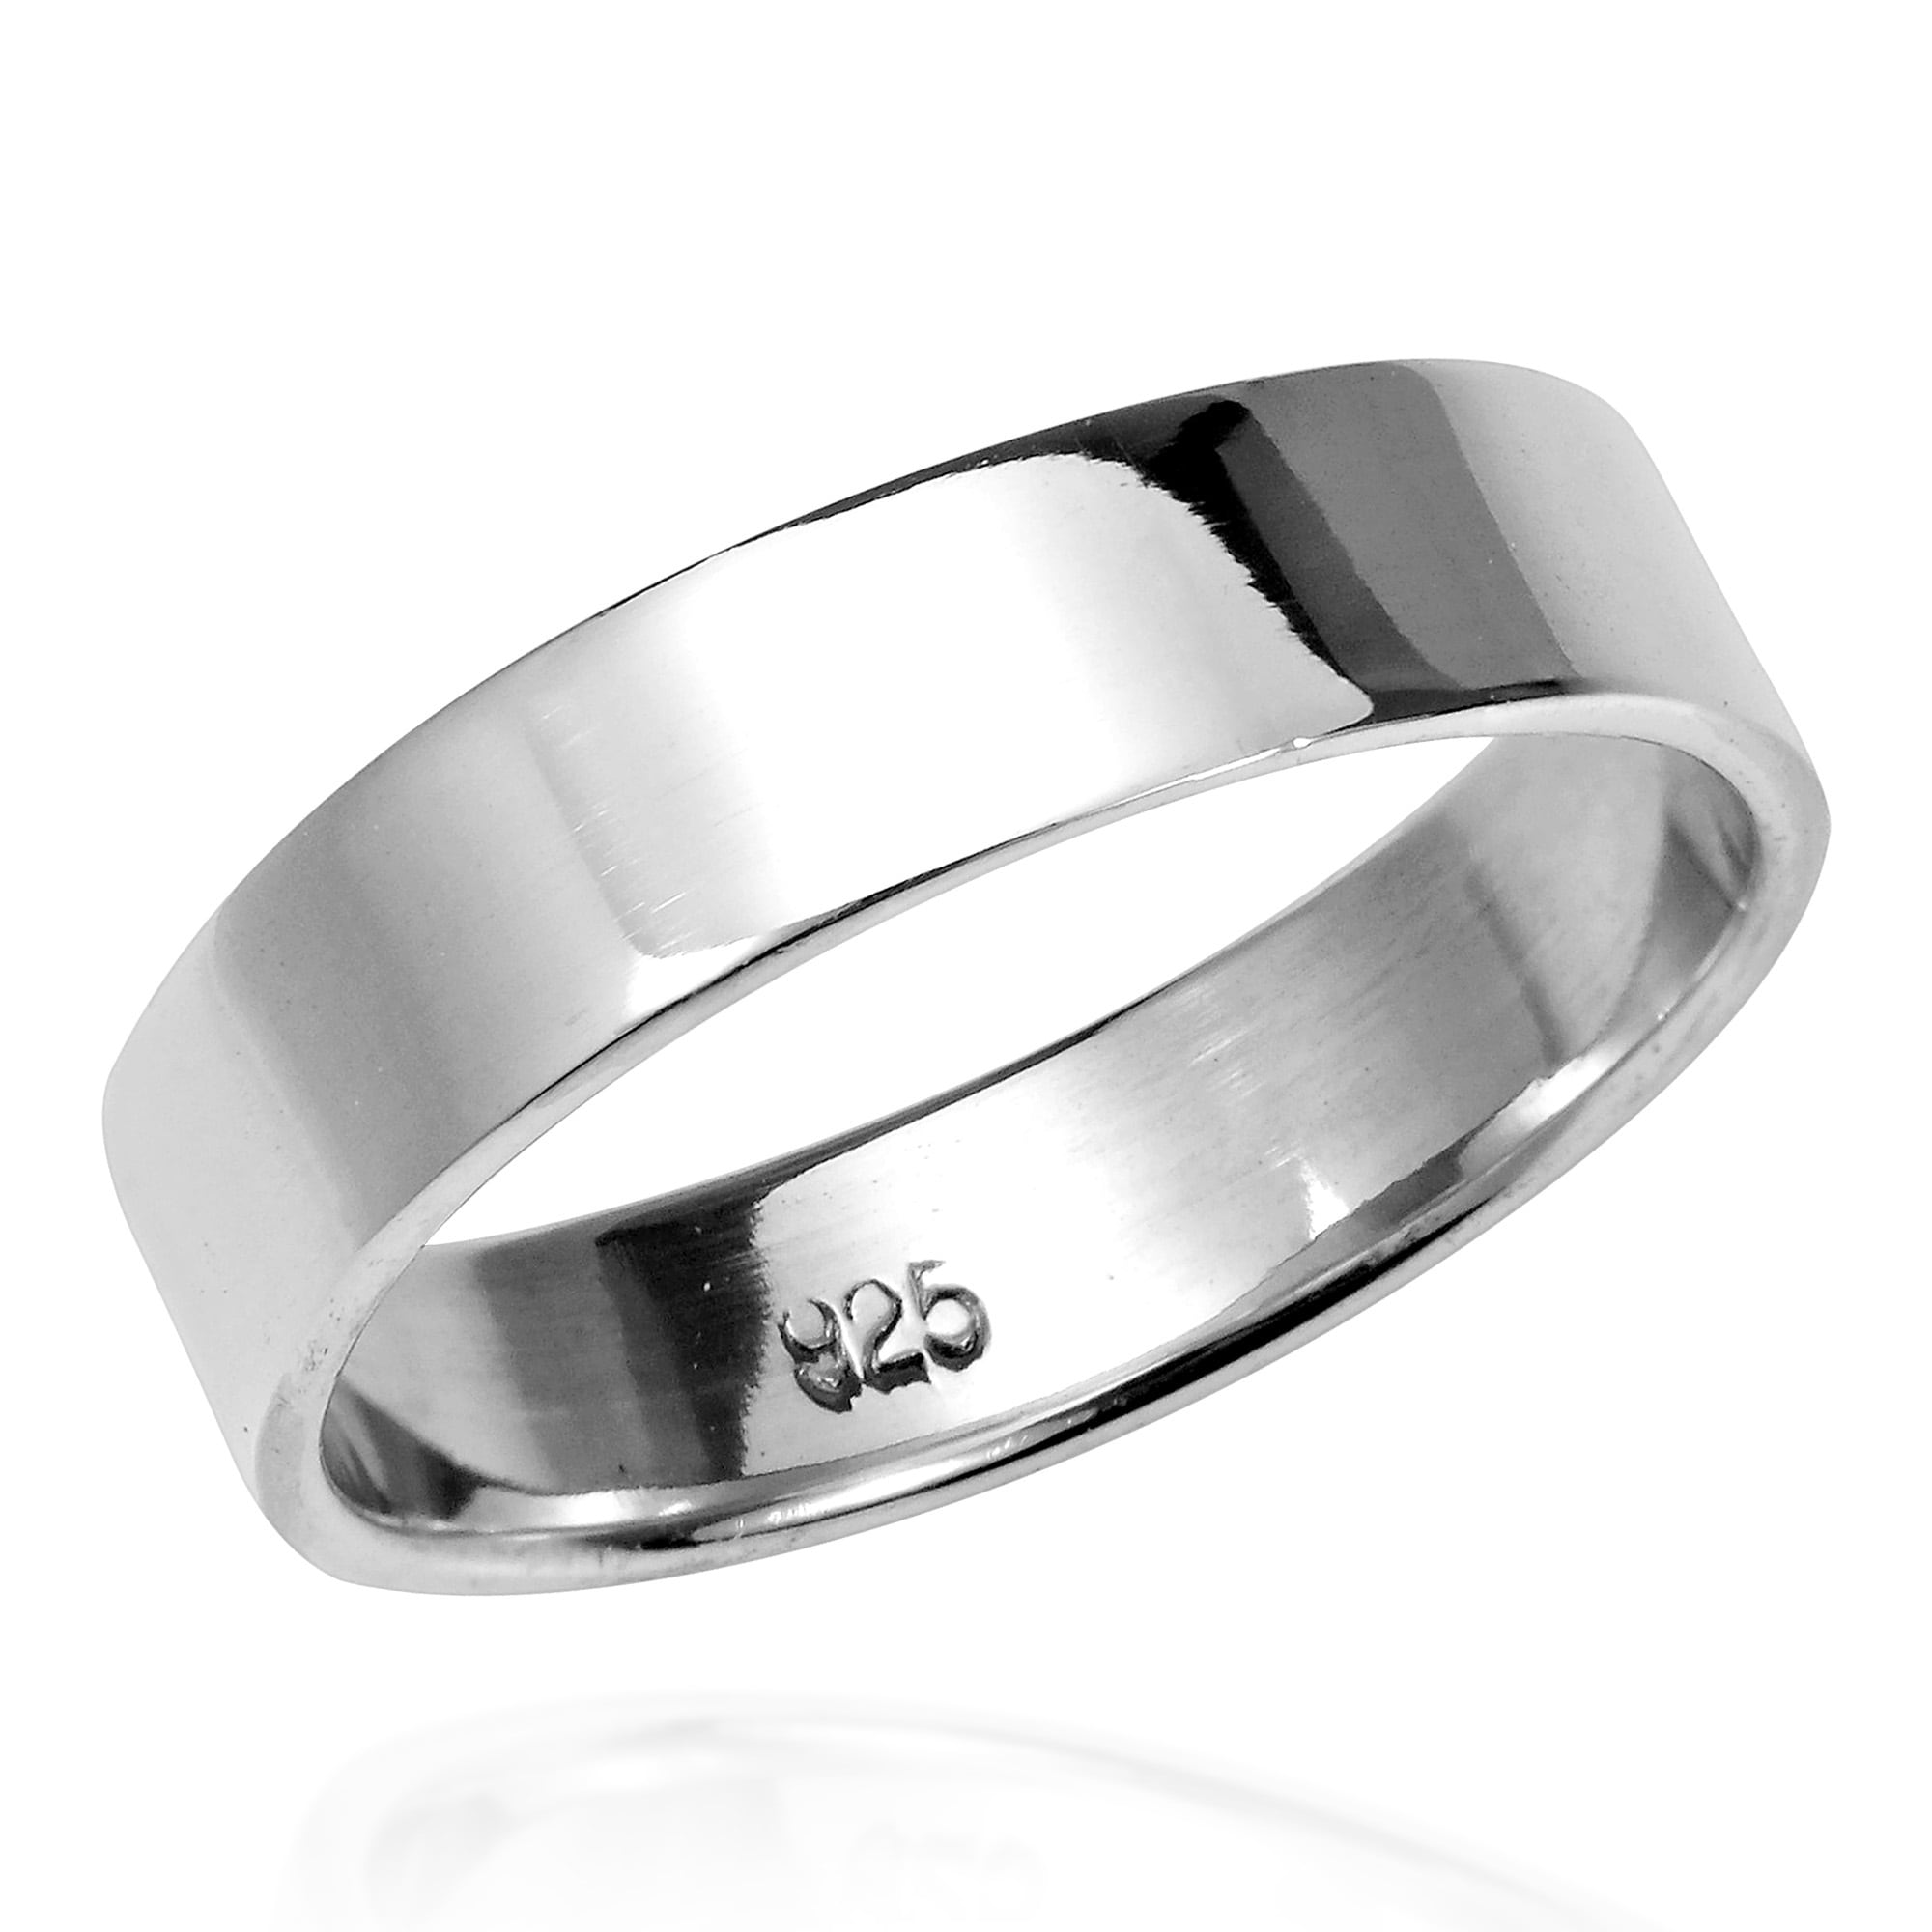 Обручальное кольцо серебро мужское. Сильвер кольцо серебро hsr219. Кольцо мужское Алорис Сильвер. Silver&Siver кольцо. Гликин Silver кольцо.